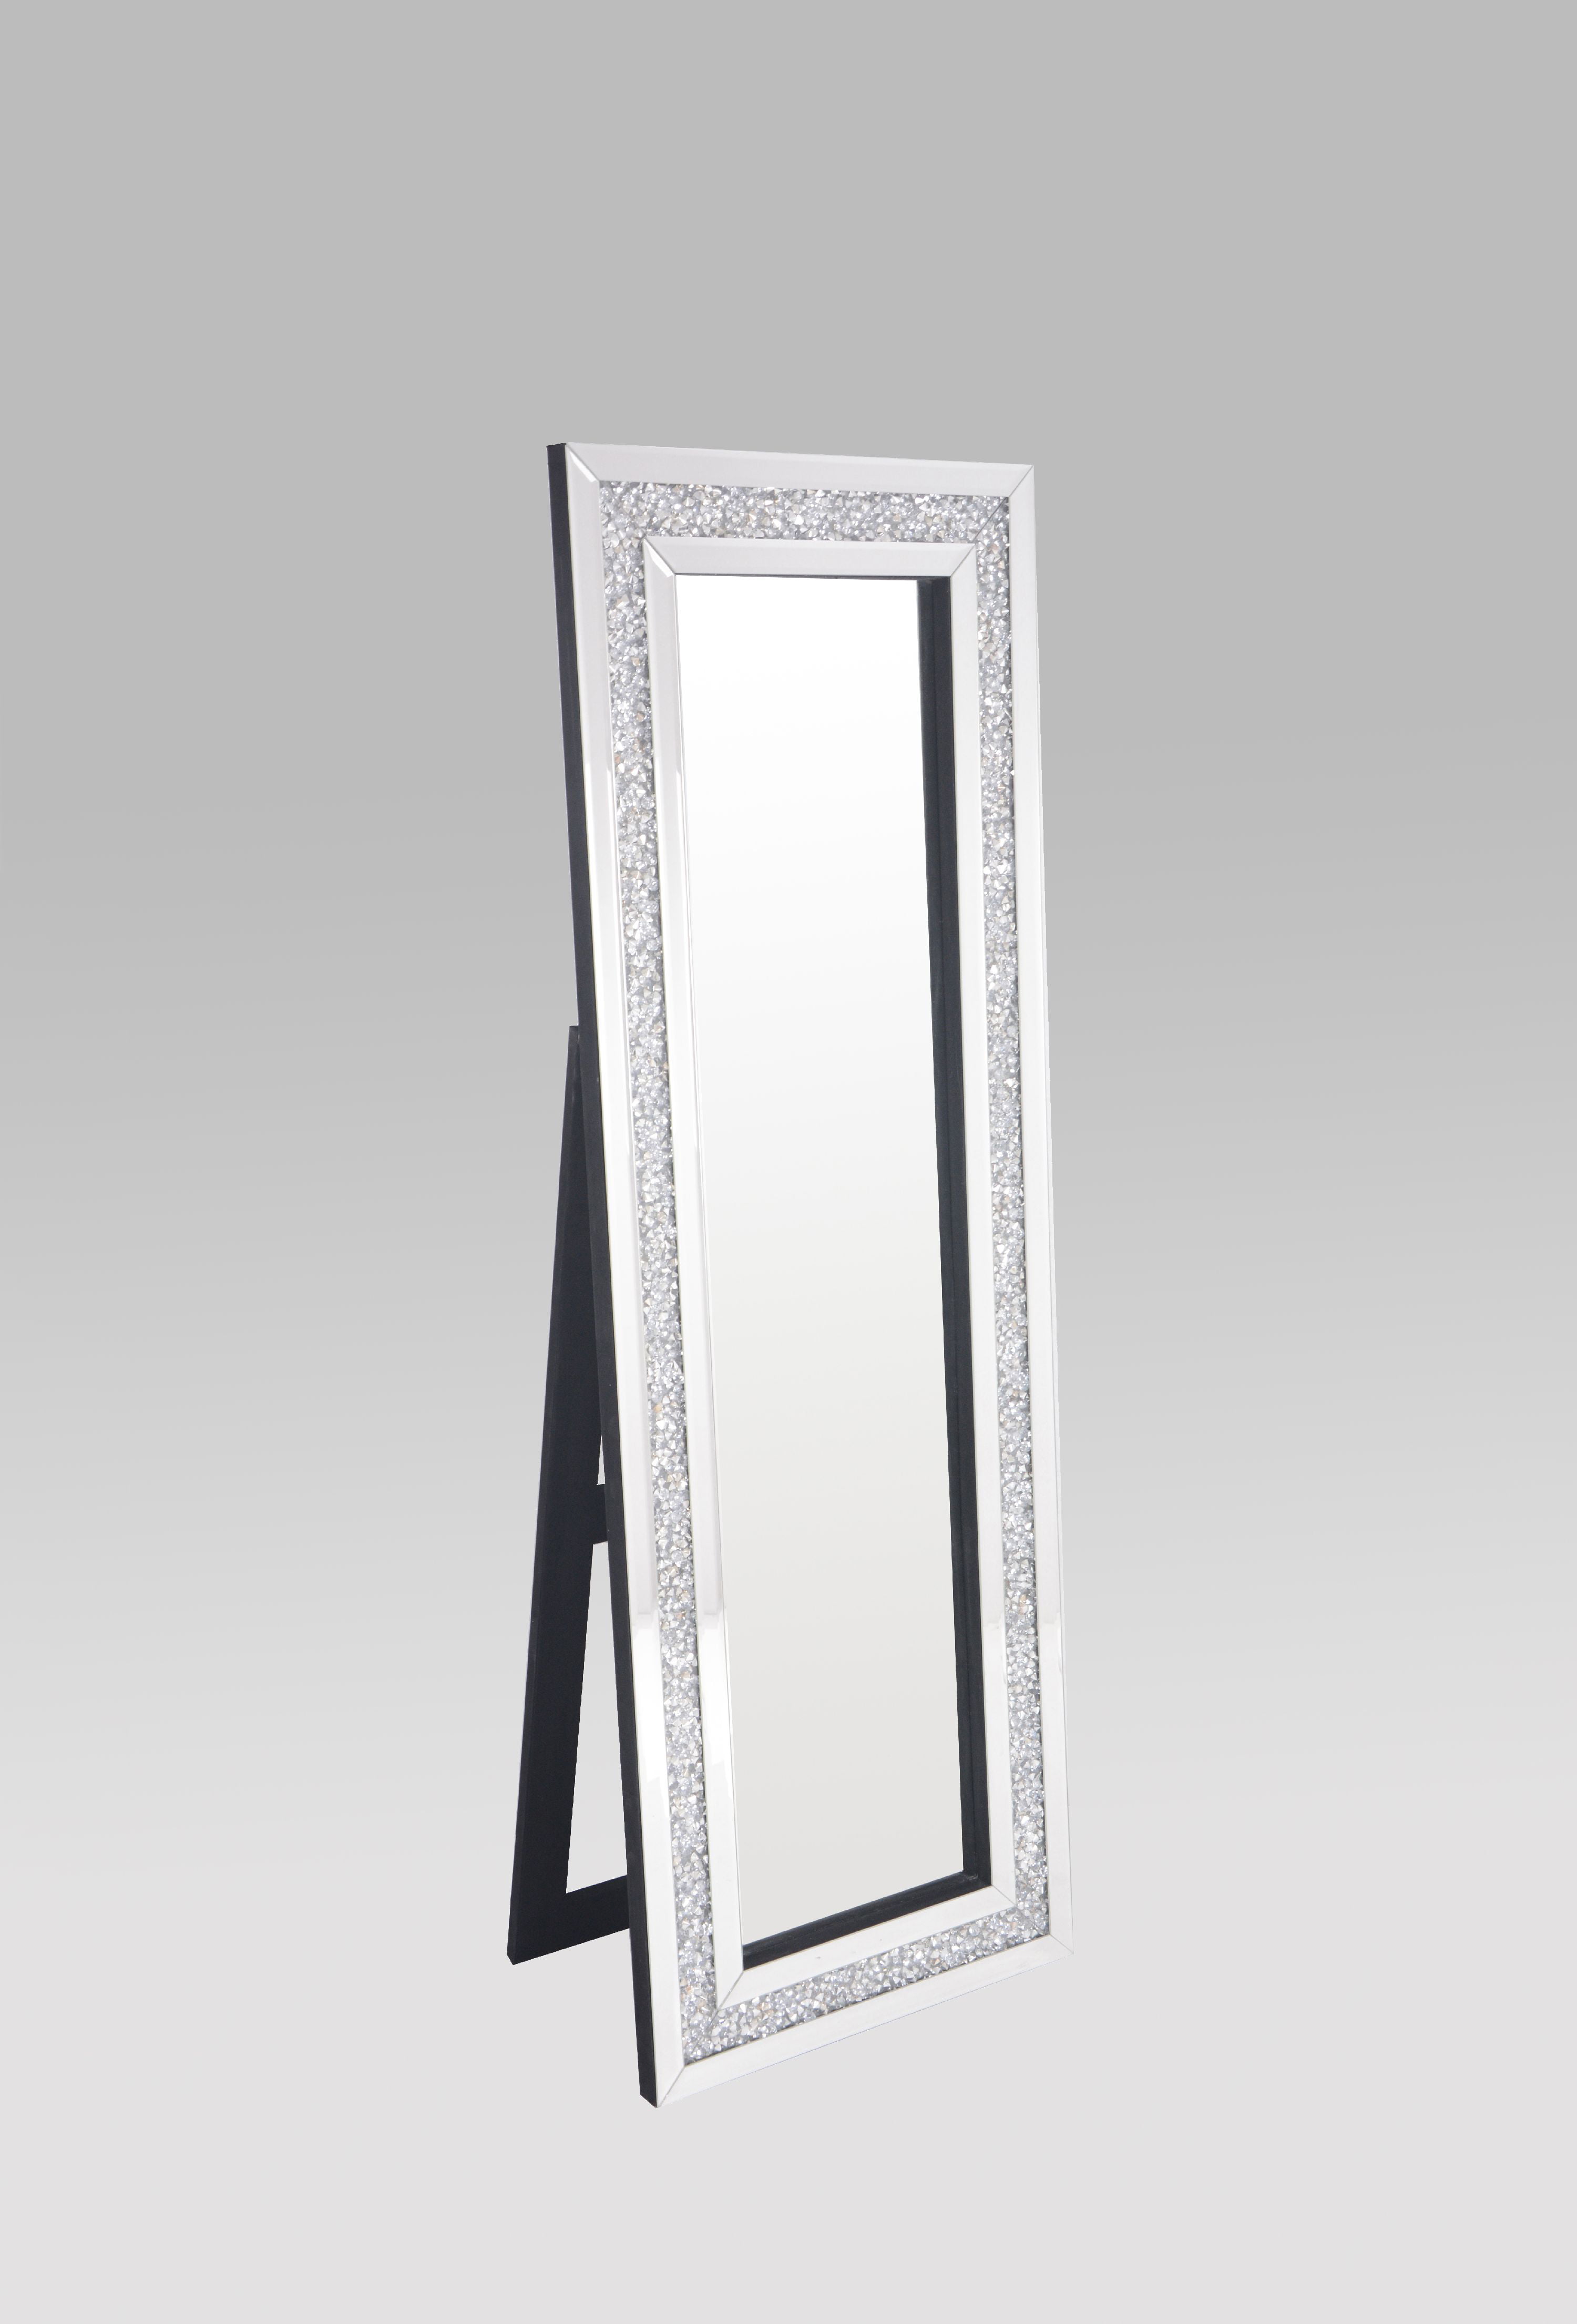 bling full length mirror,New daily offers,deltafleks.com